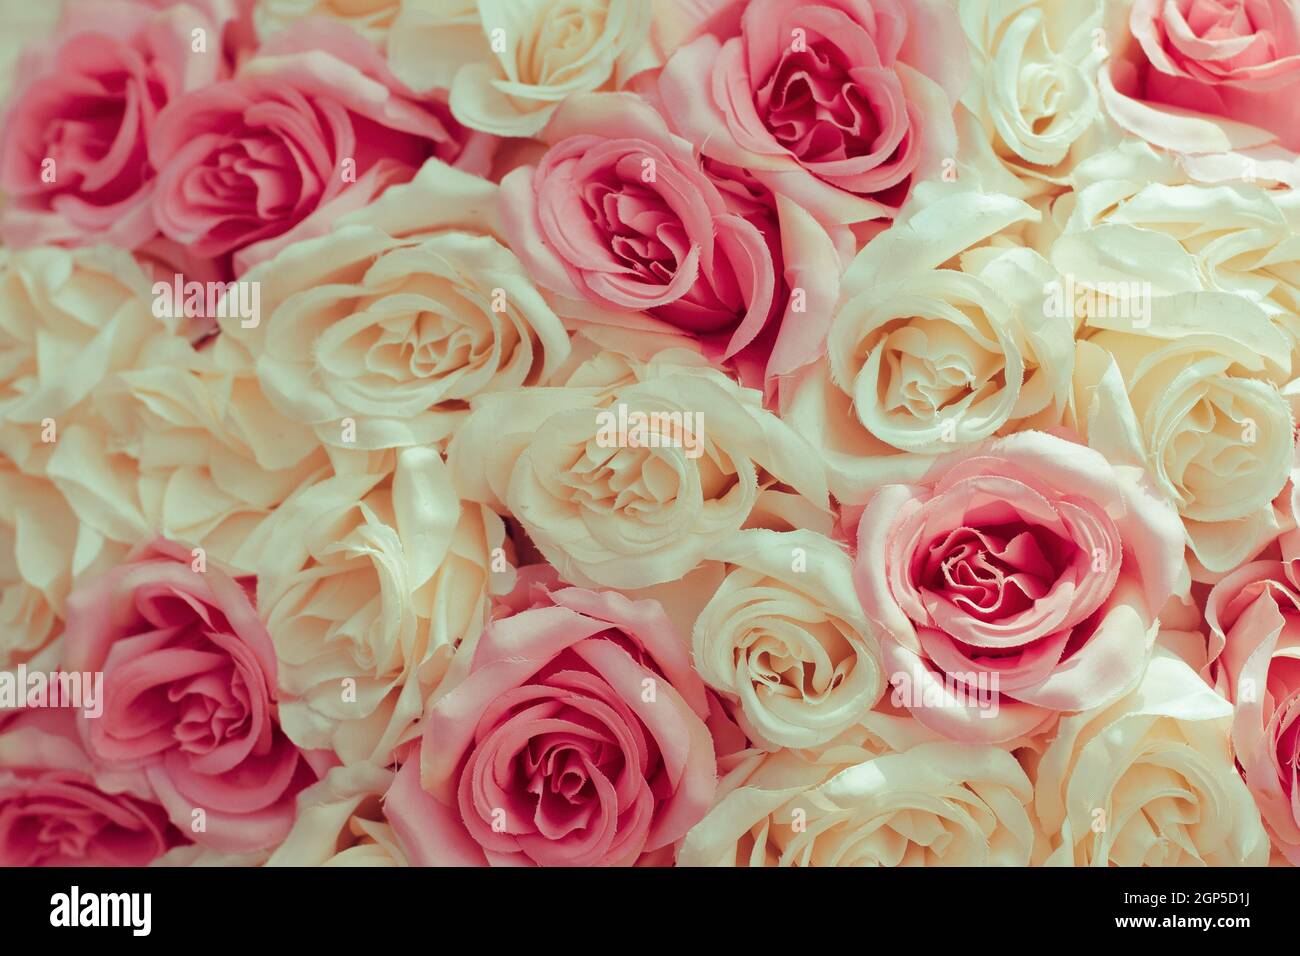 Selektive Fokus schöne rosa Blumen Hintergrund. Abstrakt weichen süßen rosa weißen Blume Hintergrund. Schöne rosa Rosen Blume Blüte Blume Bac Stockfoto